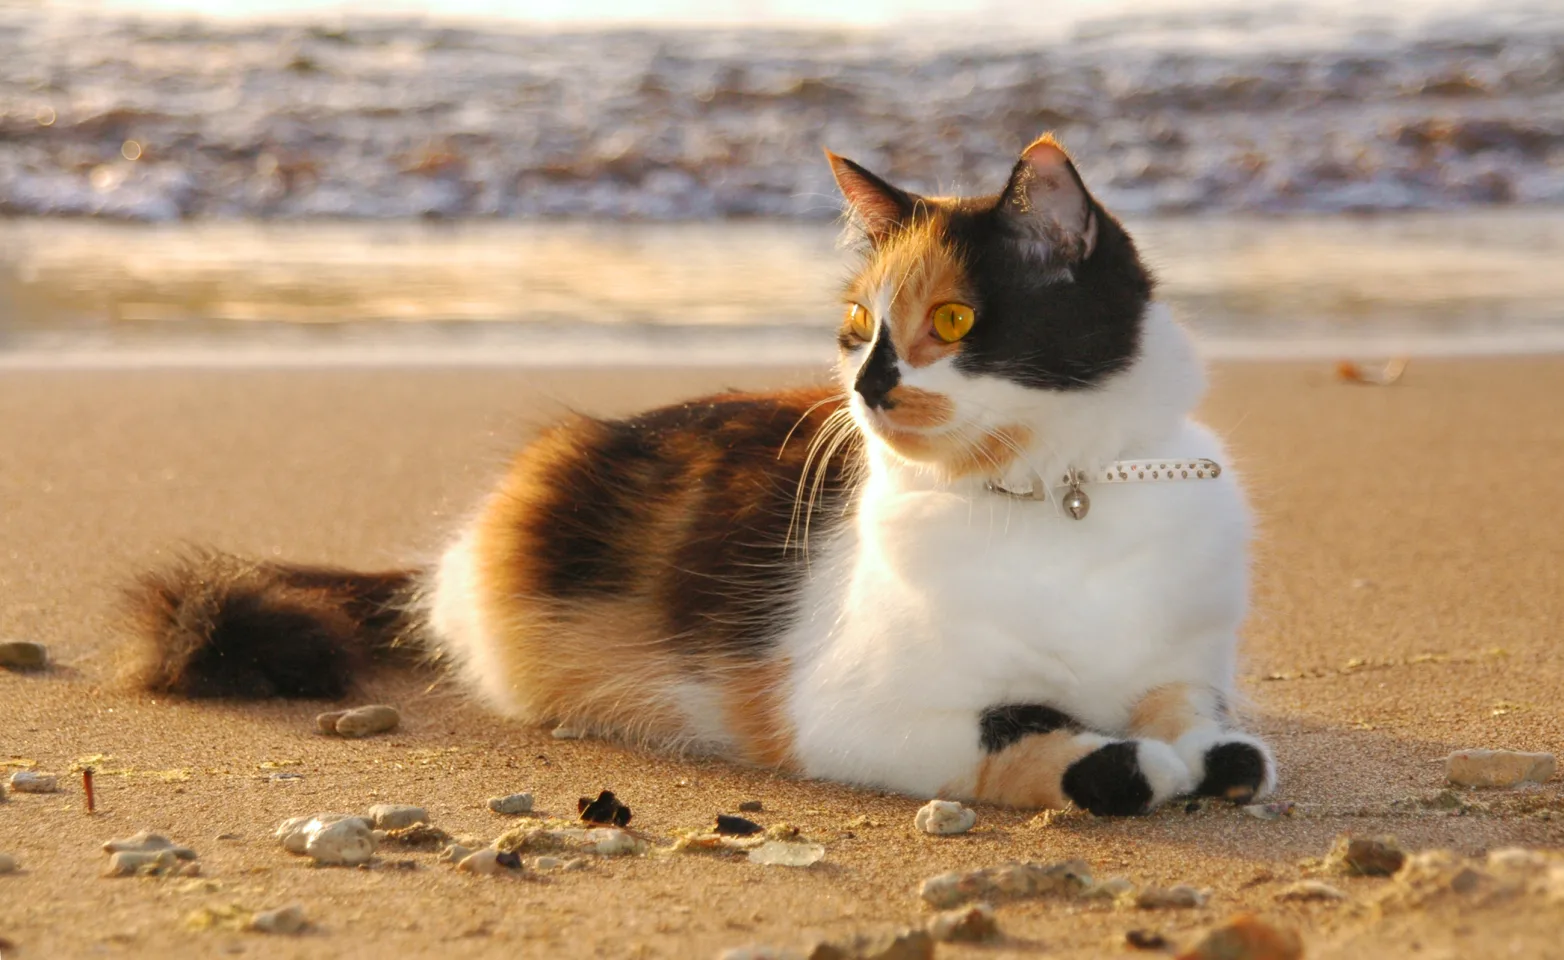 Cat on the beach.